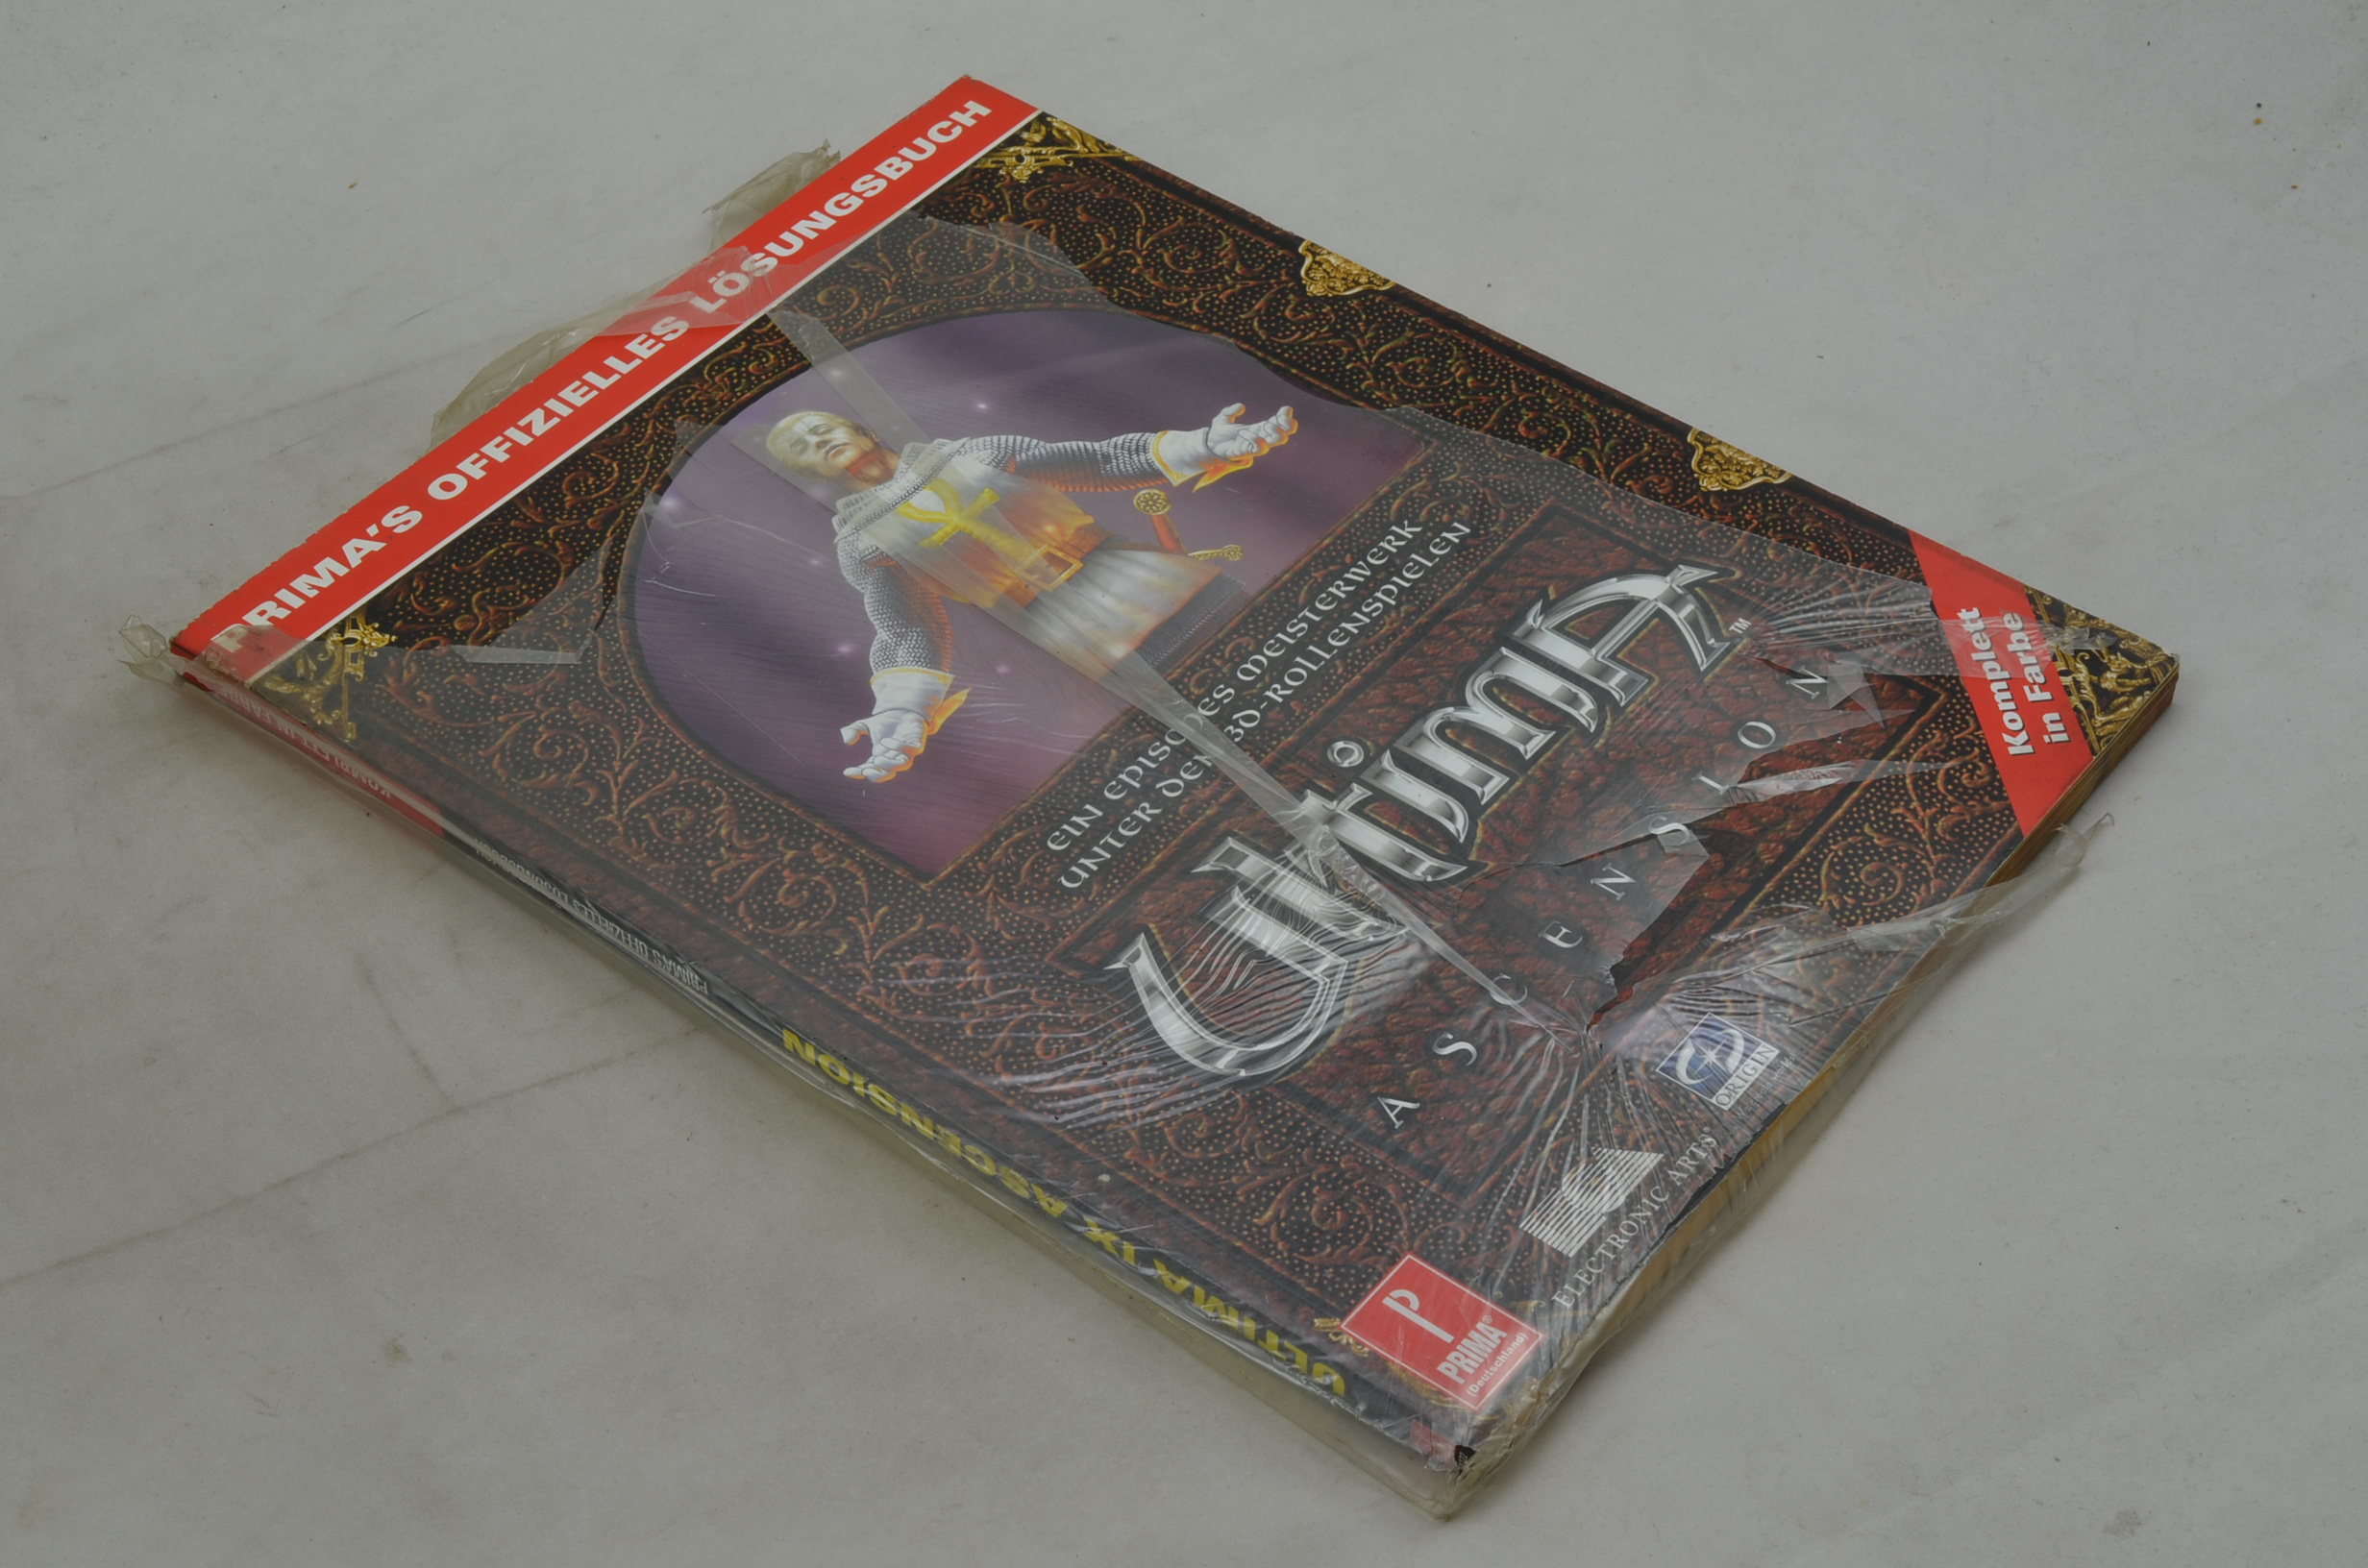 Produktbild von Ultima IX Ascension Spielberater